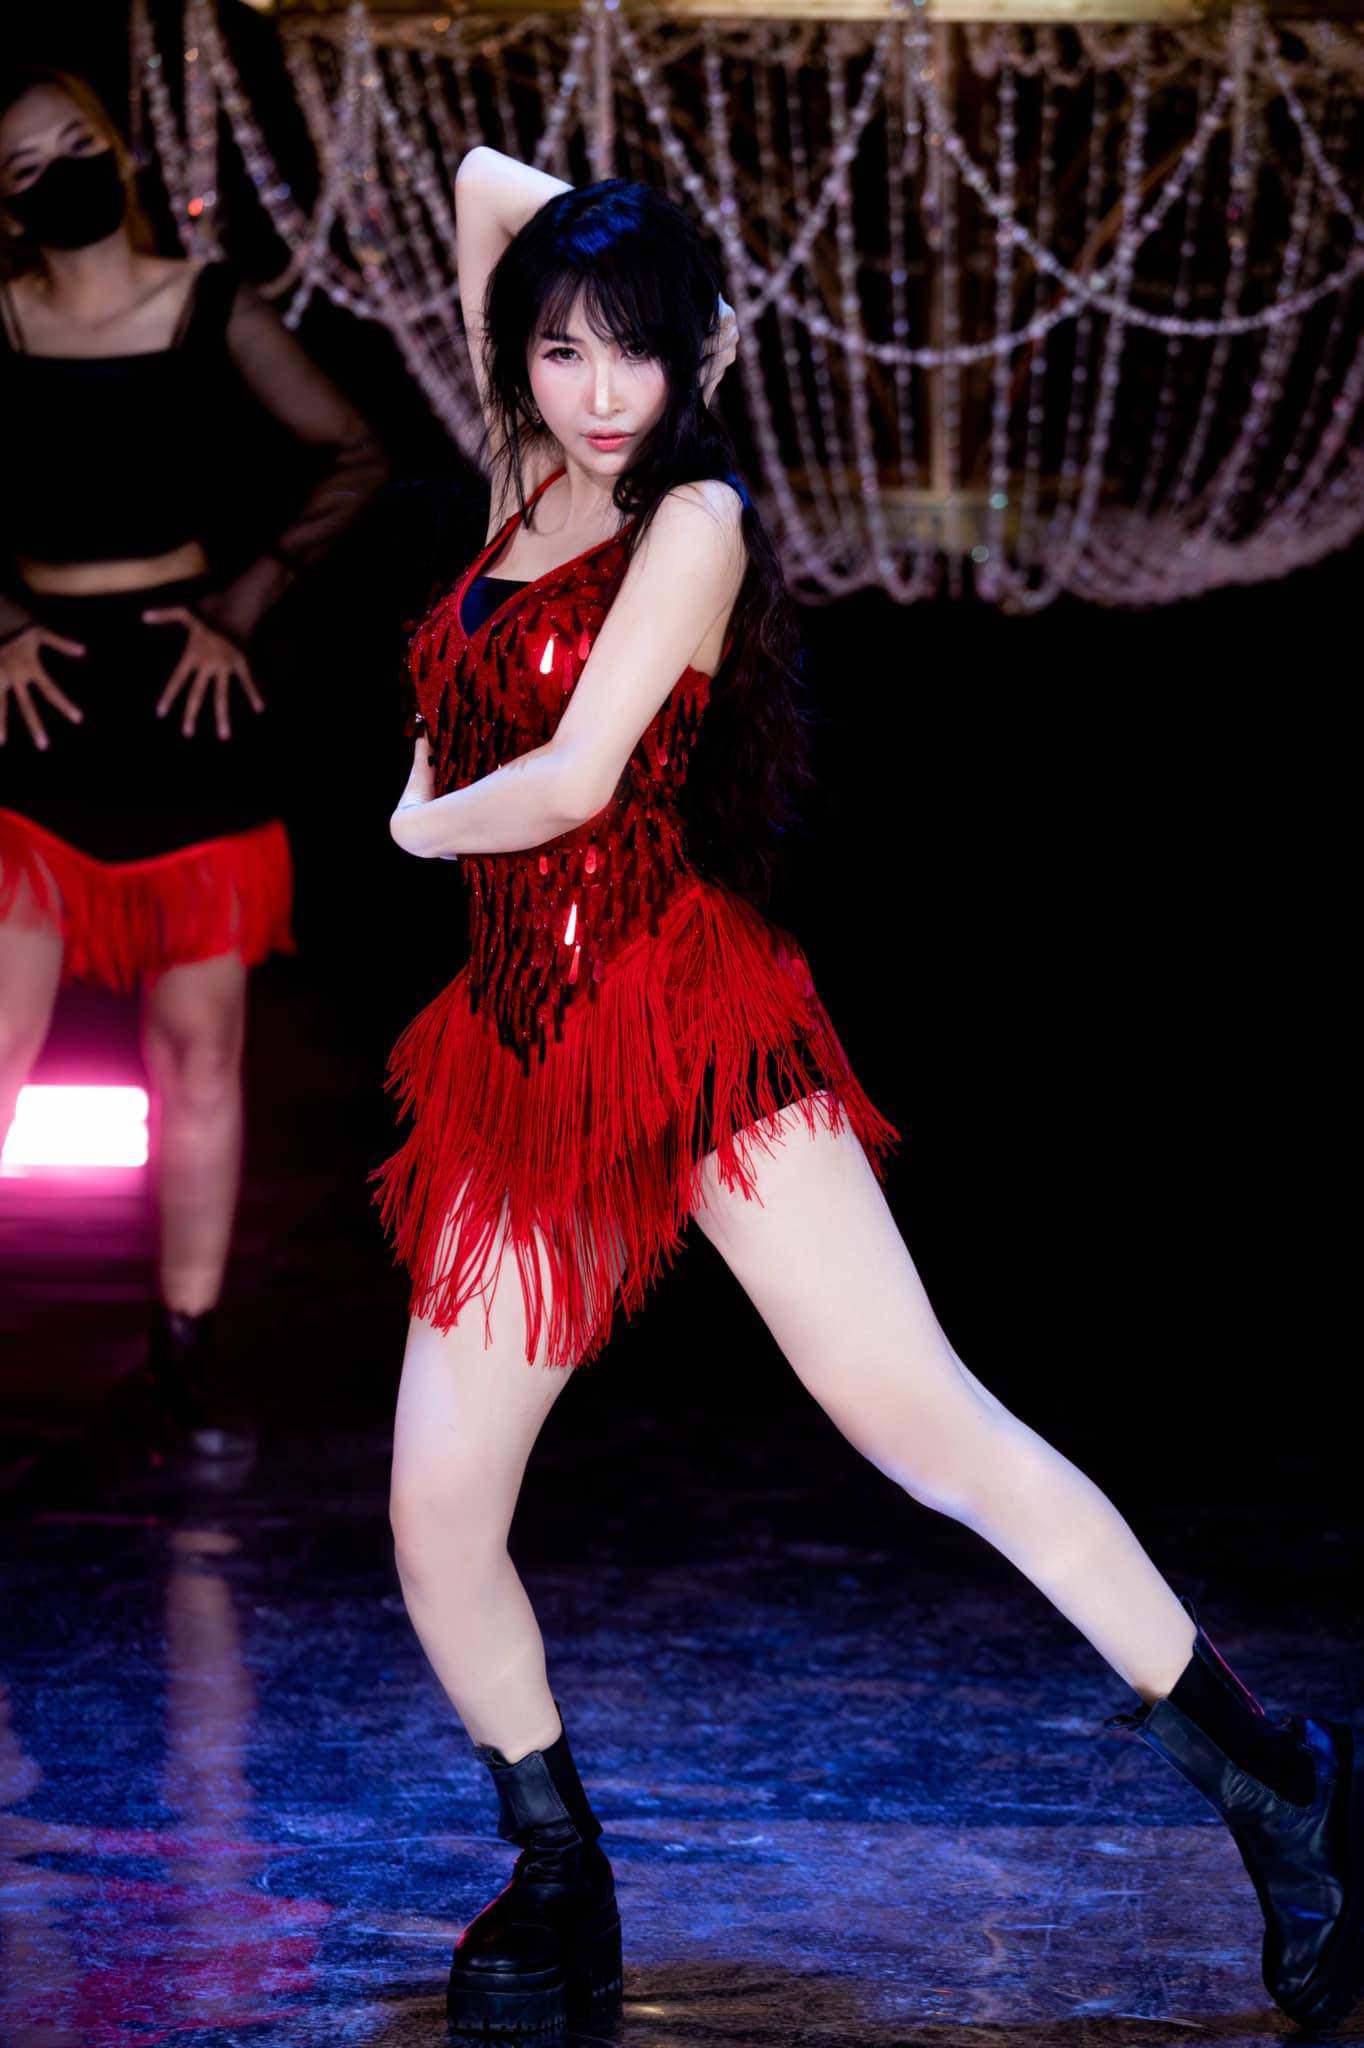 Mina Phạm trong một MV dance cover với trang phục tông đỏ đen vô cùng quyến rũ.